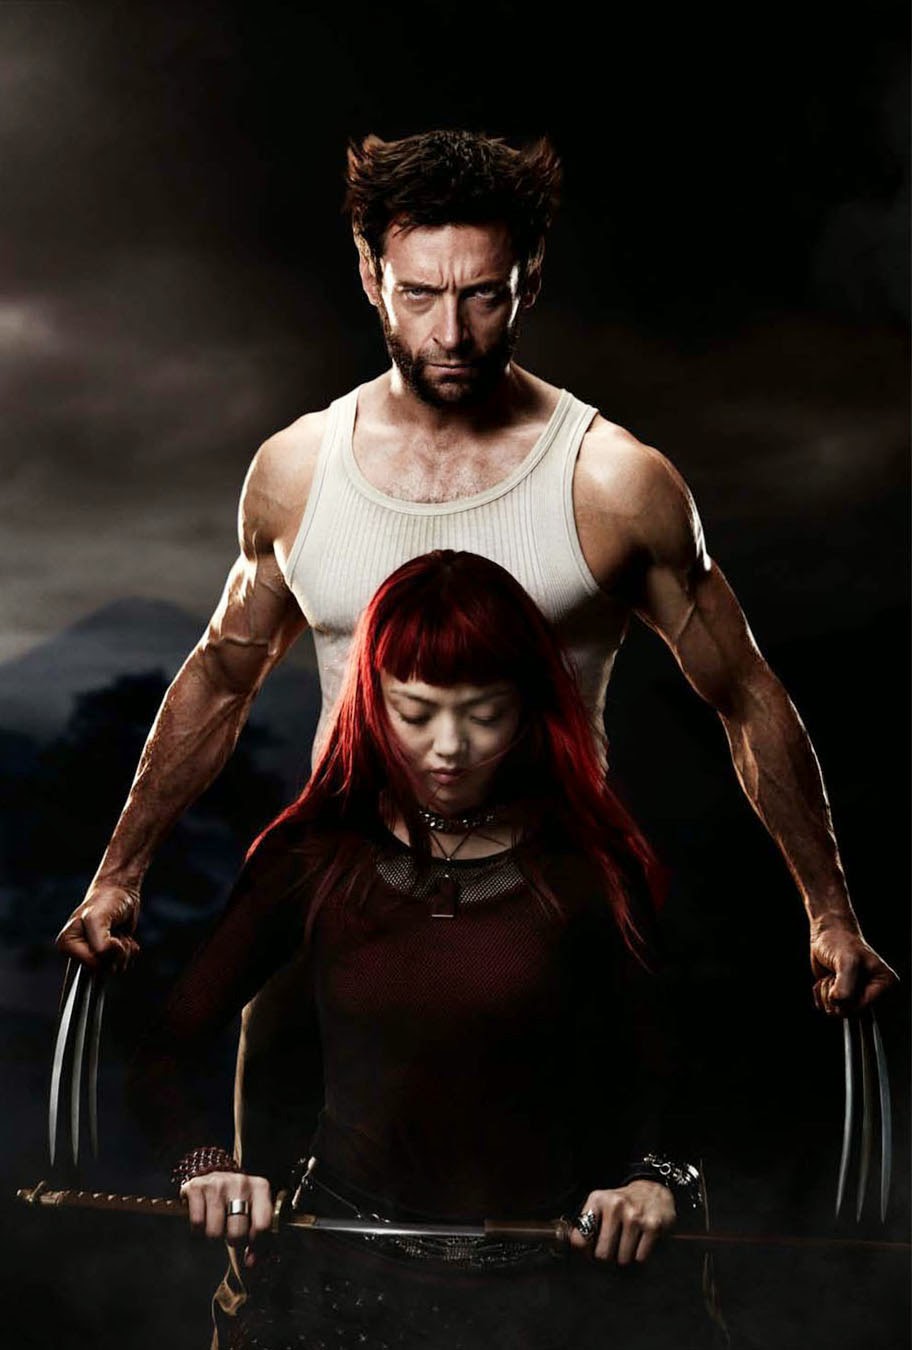 ｃｉａ こちら映画中央情報局です The Wolverine ヒュー ジャックマンが単独主演する X Menシリーズのスピンオフ映画の続編 ザ ウルヴァリン2 の製作を 世紀foxが決定 ジェームズ マンゴールド監督に続投を打診した